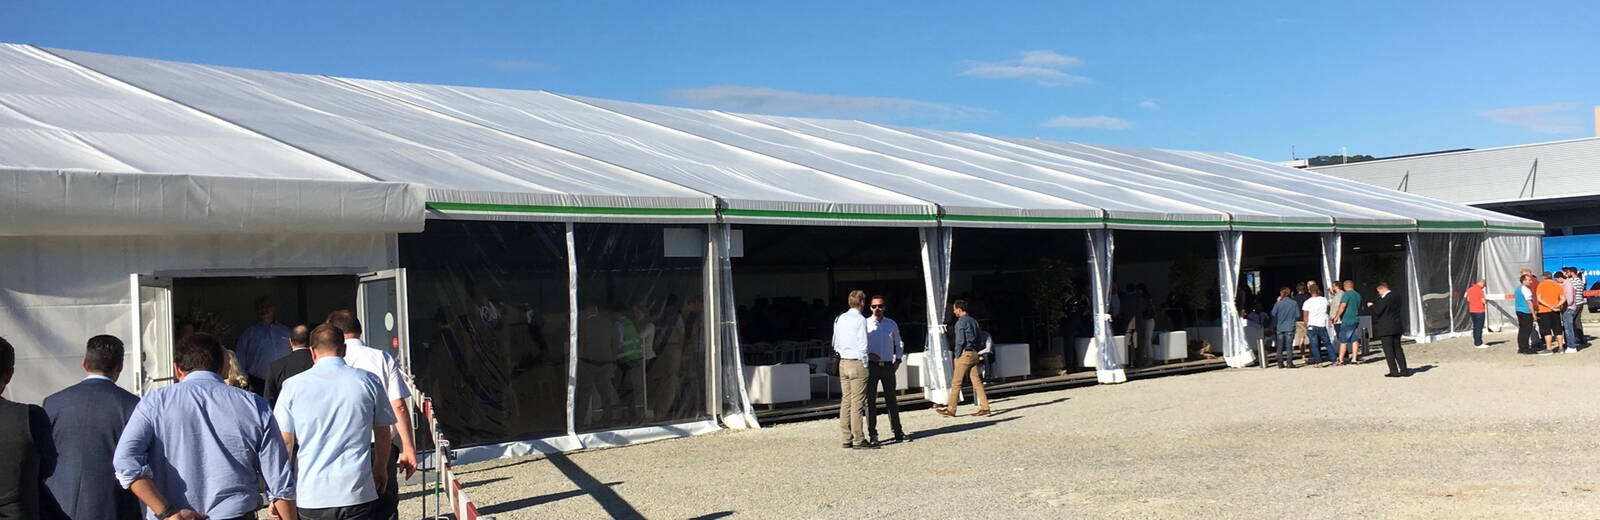 grosses Zelt mit offener Seitenwand, Gäste im und vor dem Zelt